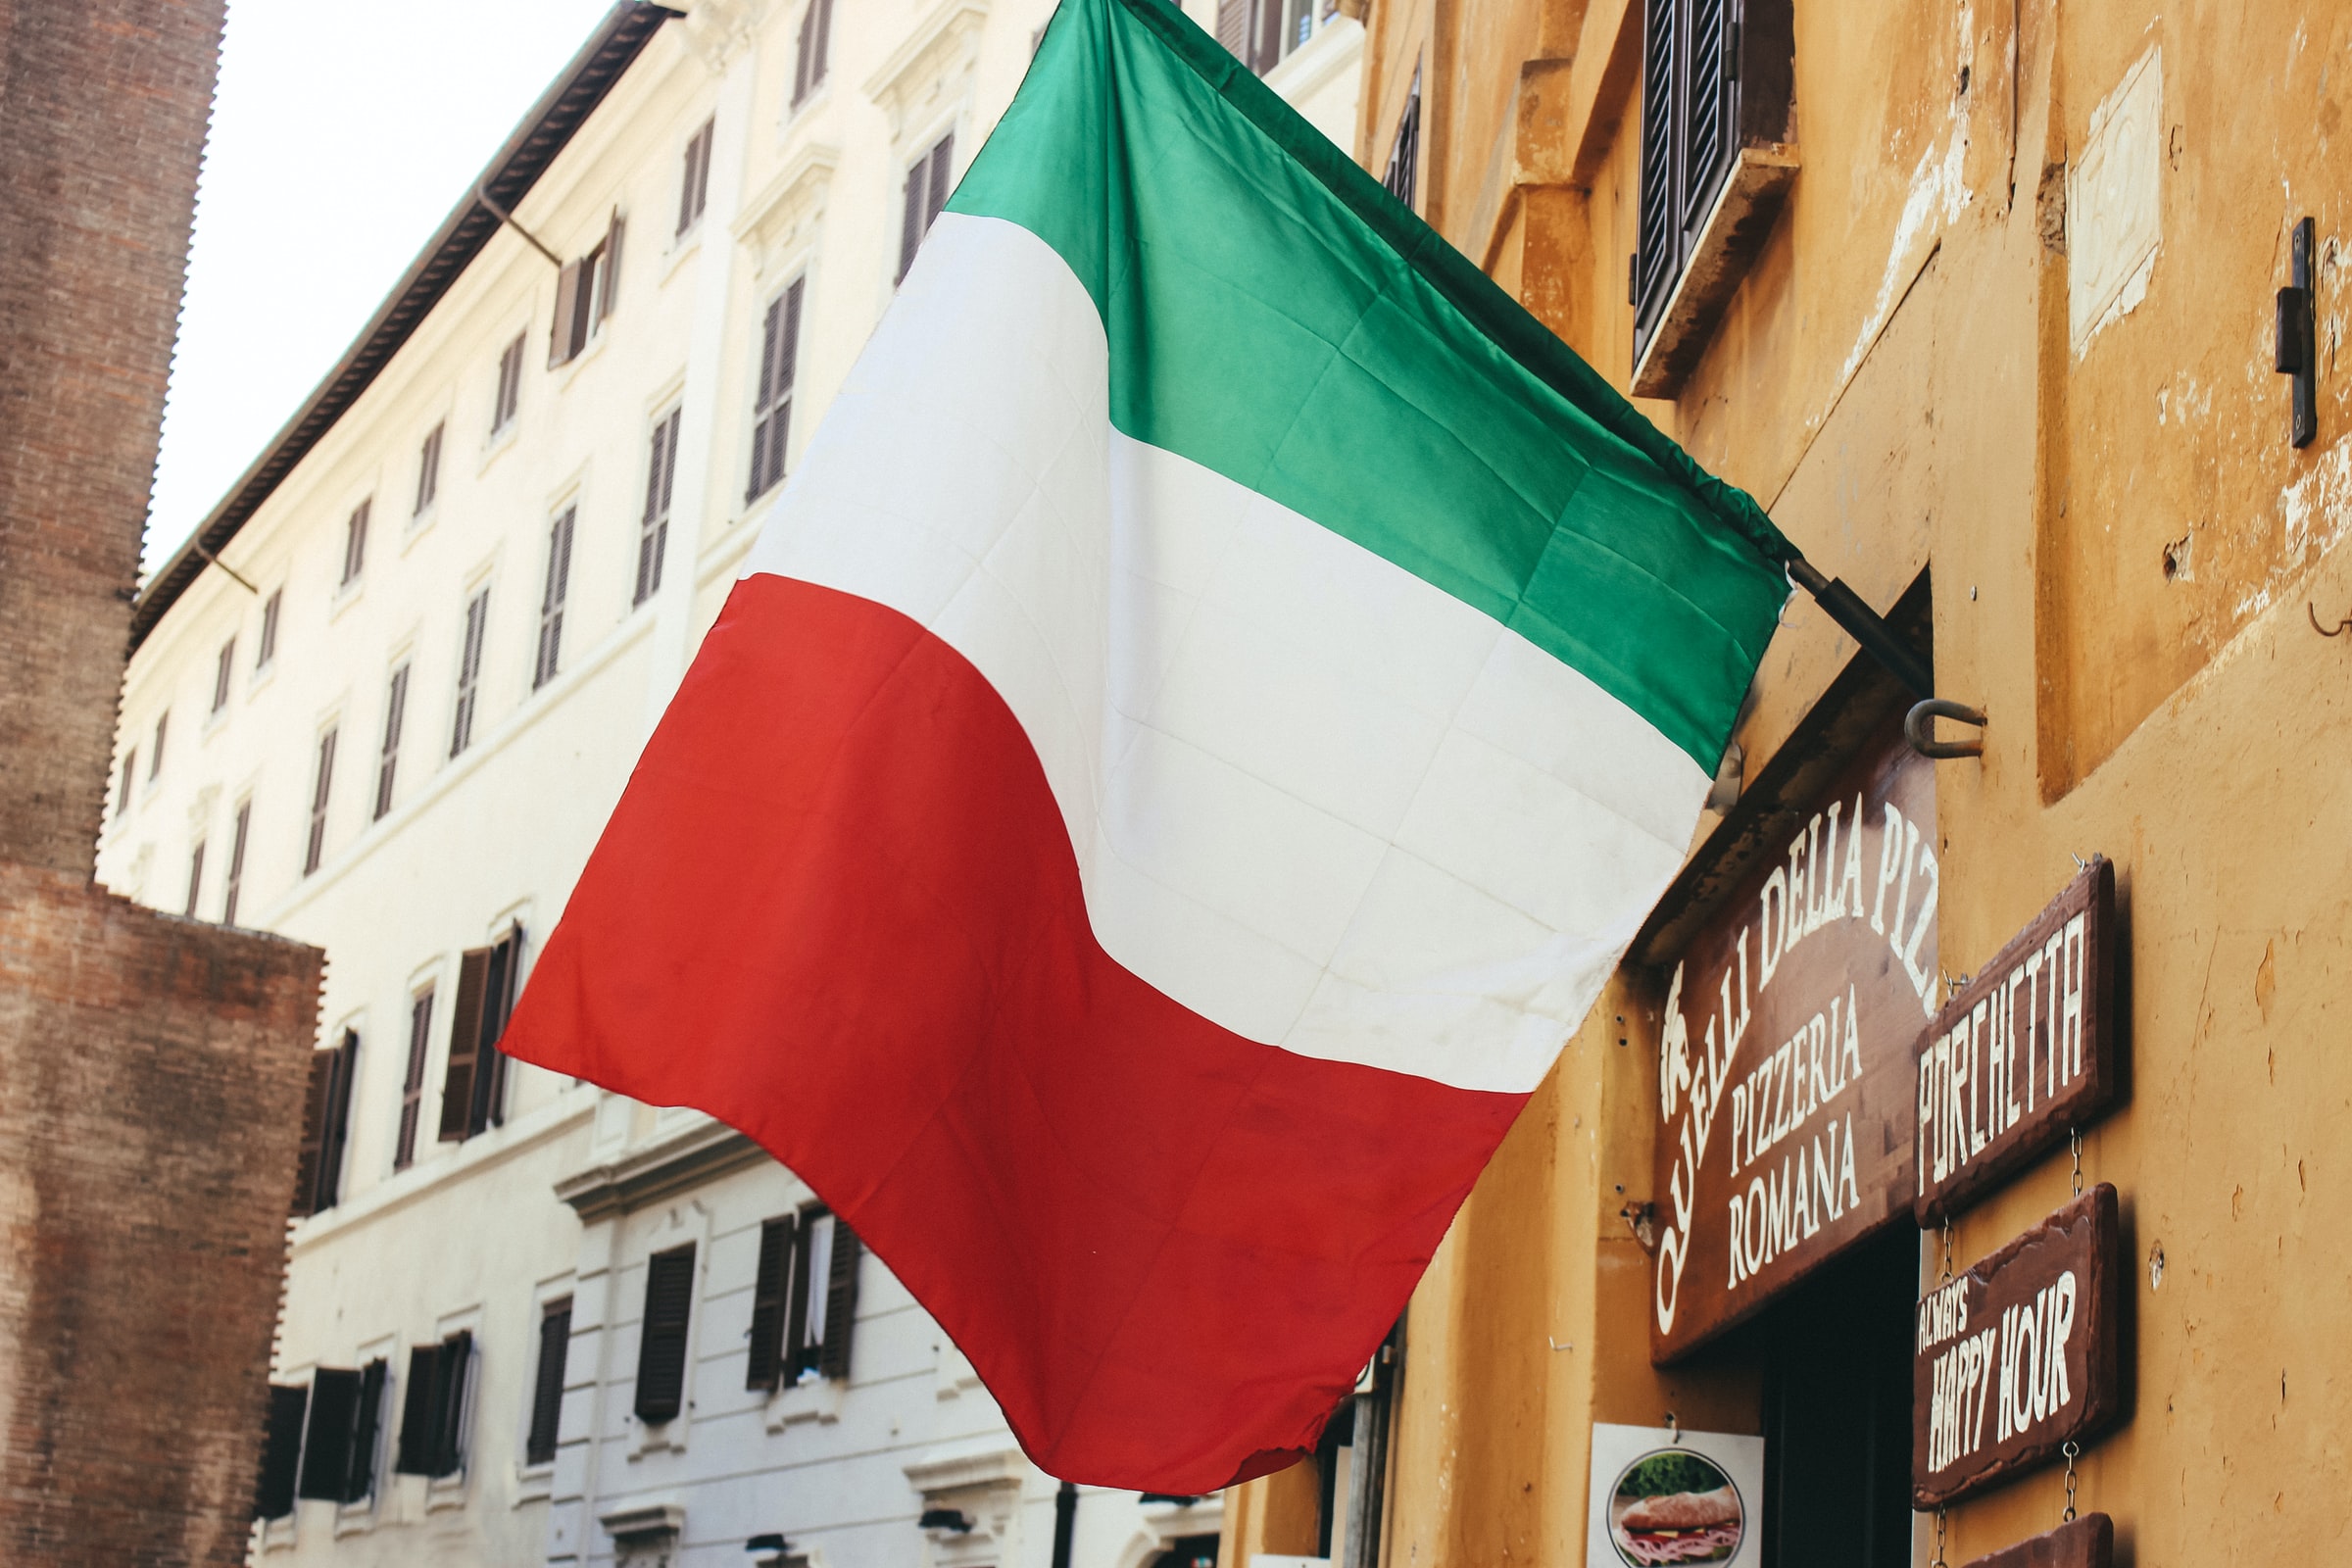 Assessoria para reconhecimento de cidadania italiana